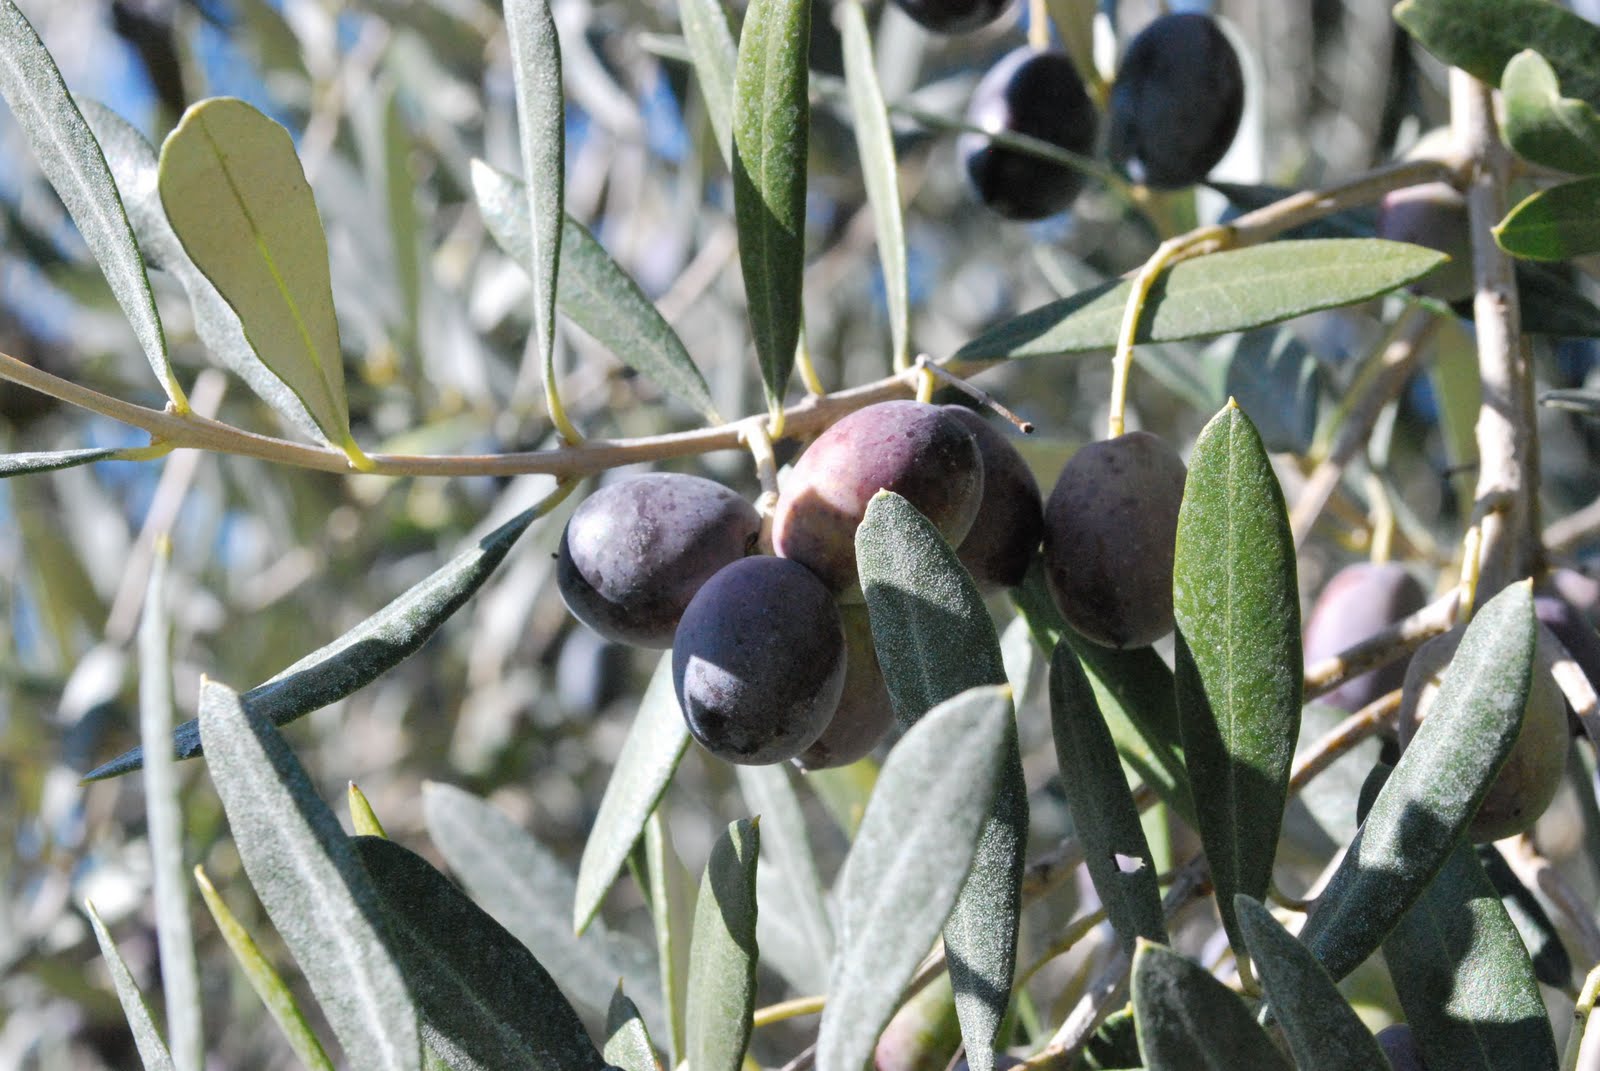 Cured Olives